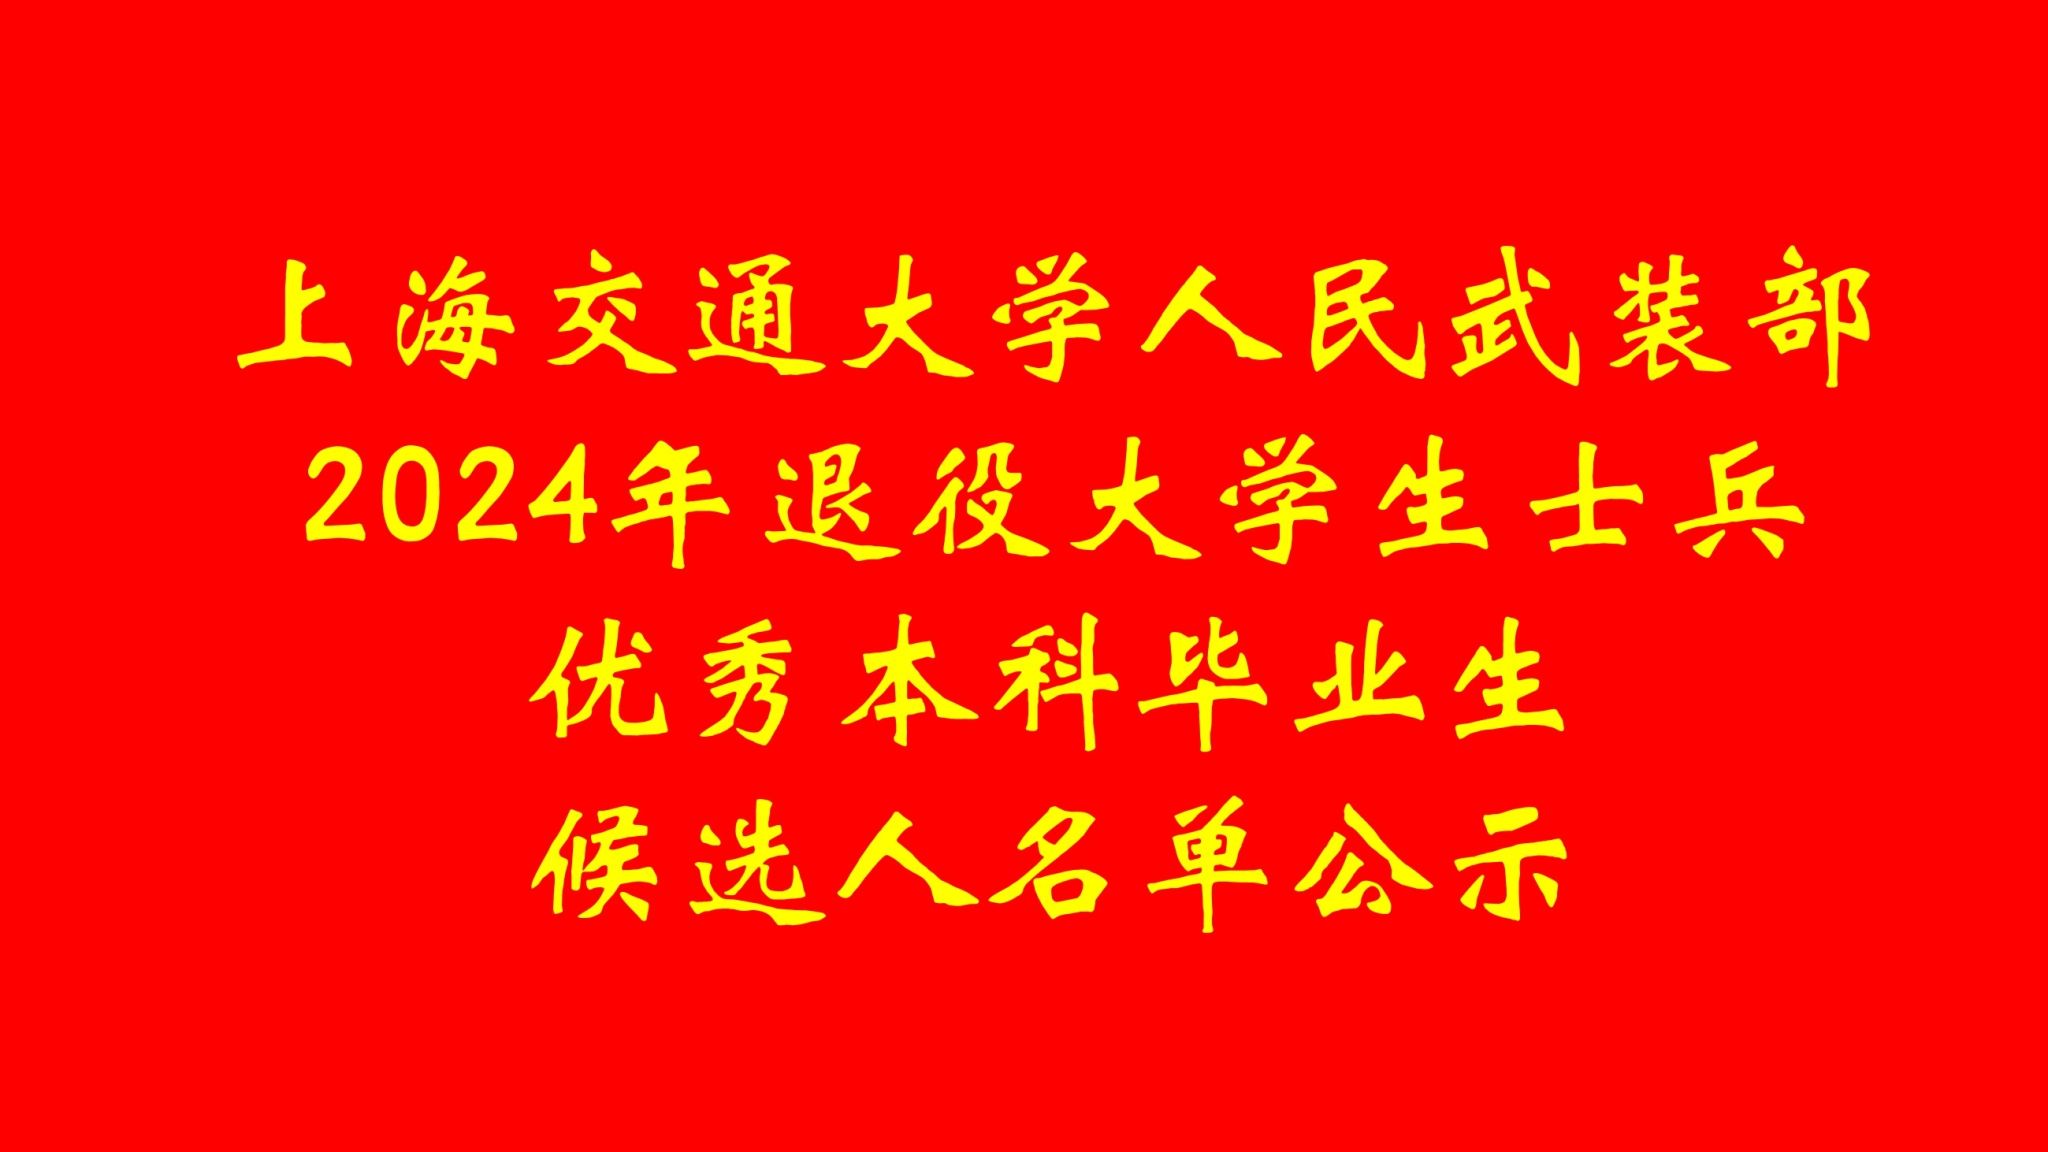 上海交通大学人民武装部2024年退役大学生士兵优秀本科毕业生候选人名单公示